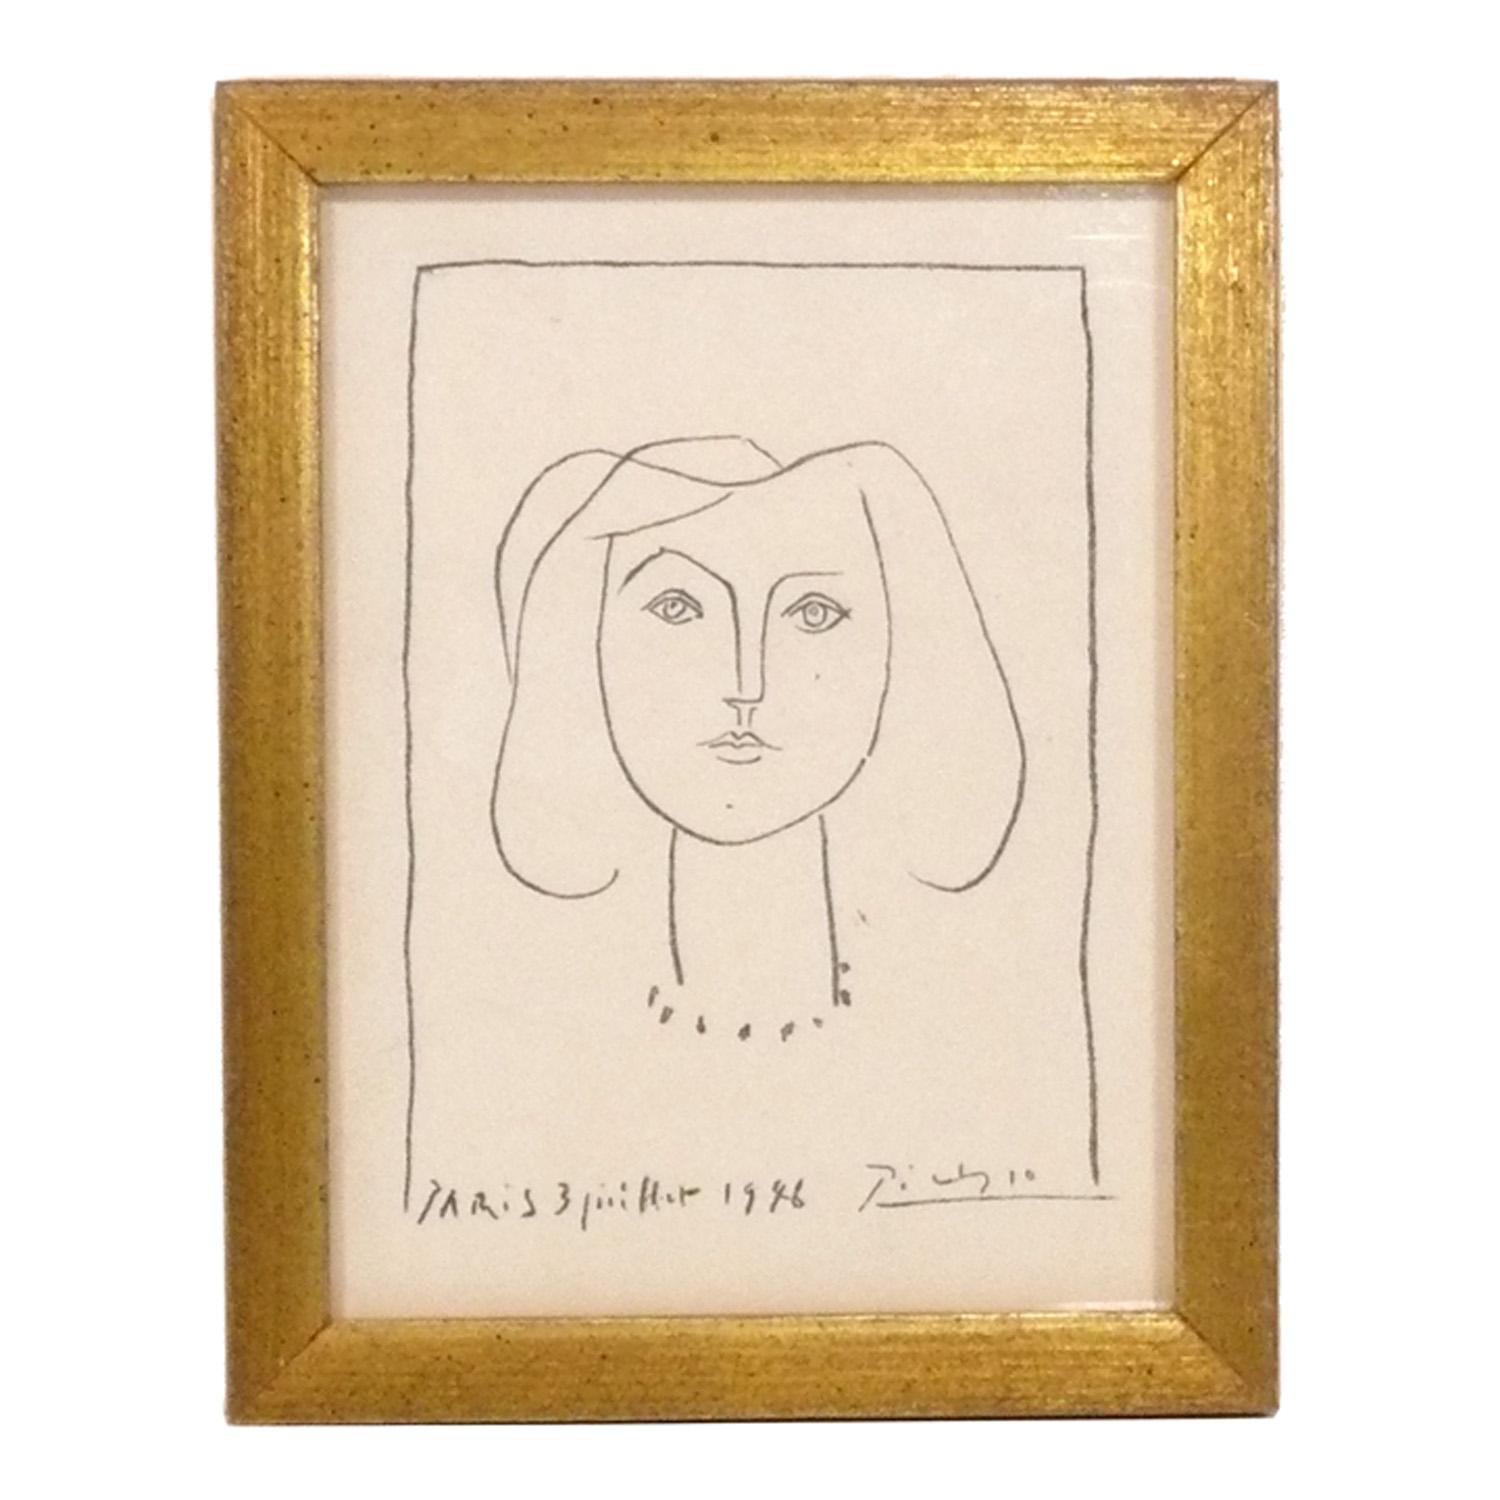 Sélection de petites estampes de Pablo Picasso, France, vers les années 1960. Elles ont été récemment encadrées professionnellement dans des cadres en bois doré d'époque sous verre résistant aux UV. Dans le sens des aiguilles d'une montre et à